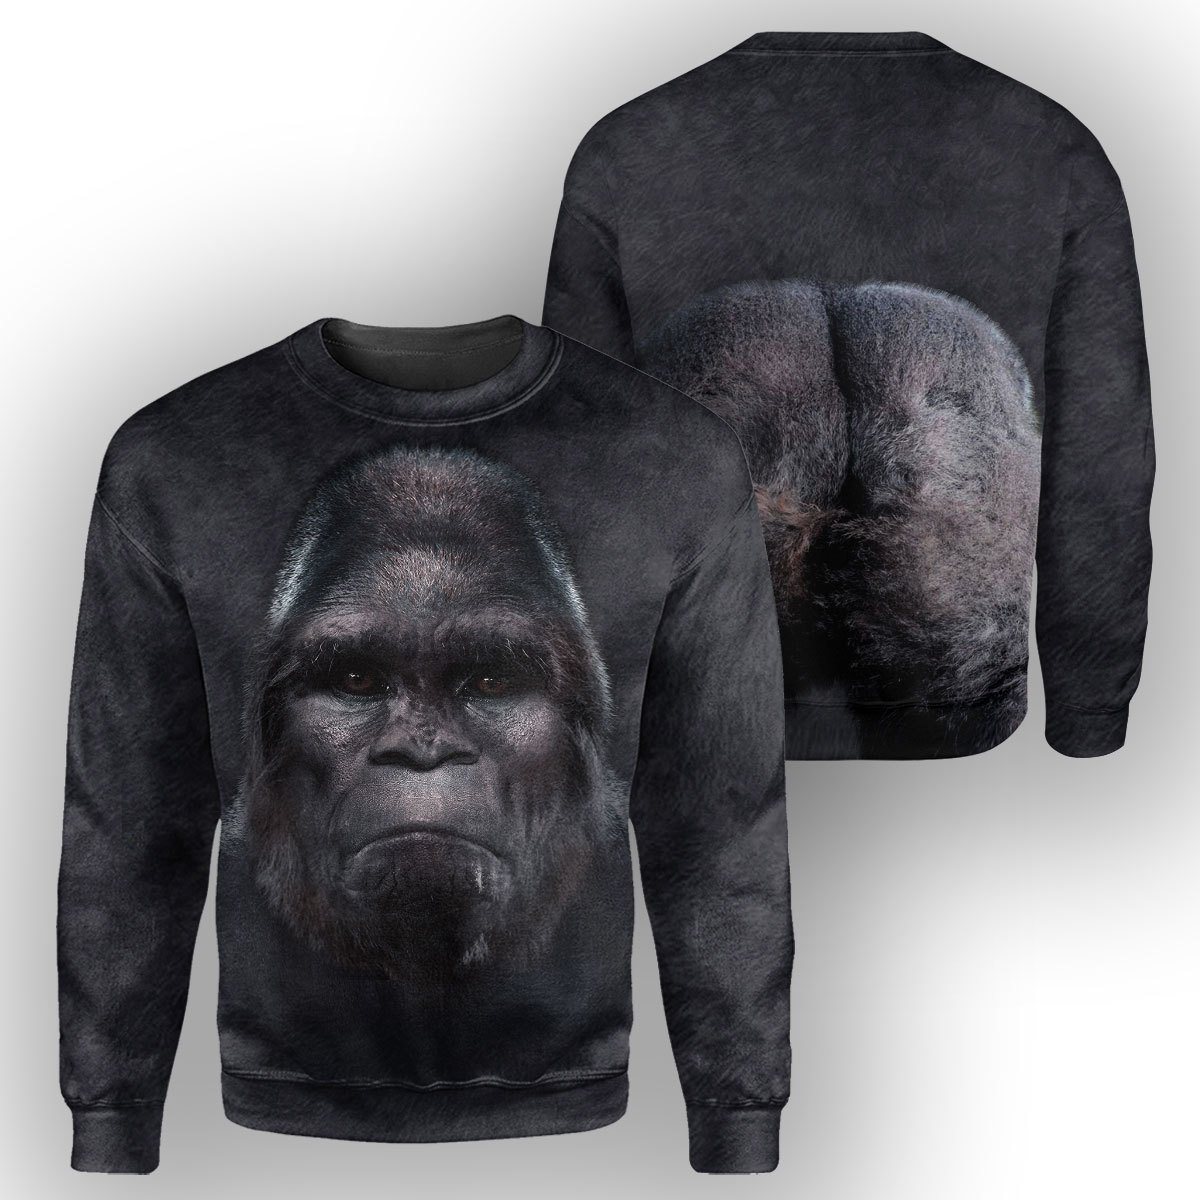 Gearhumans Bigfoot - 3D All Over Printed Shirt shirt 3D Apparel LONG SLEEVE S 